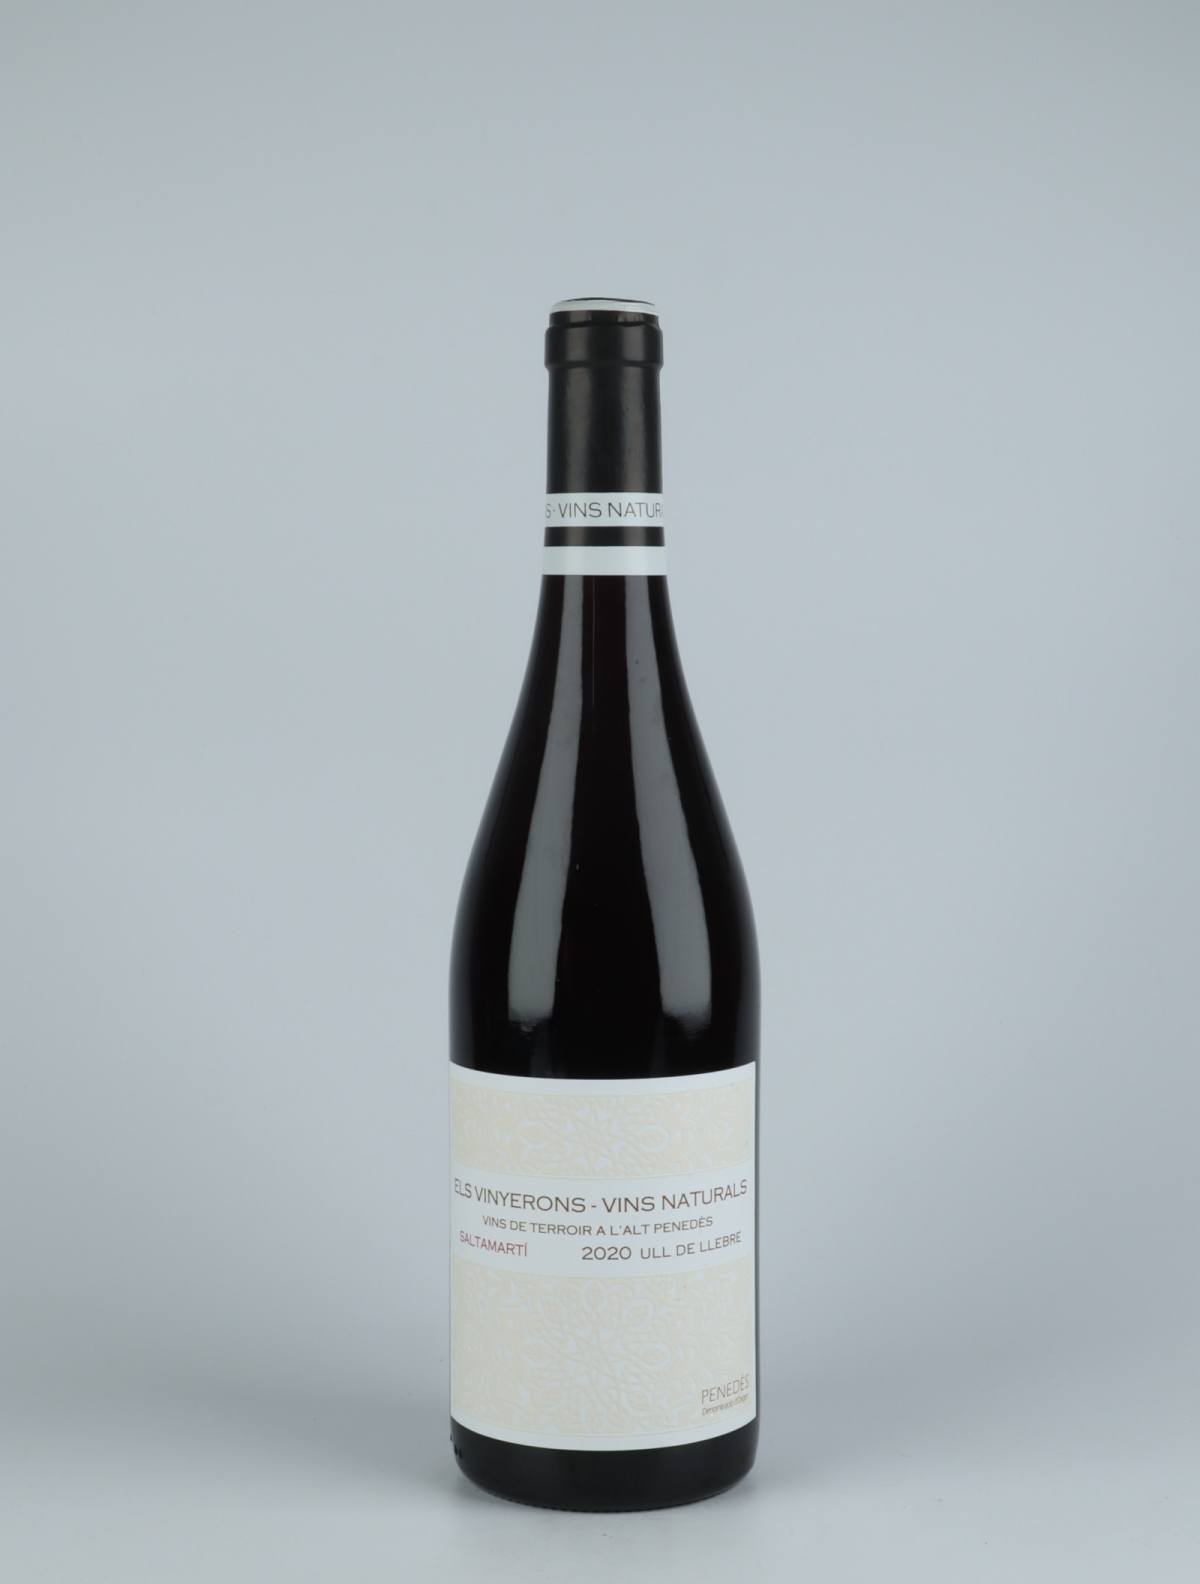 A bottle 2020 Saltamarti Red wine from Els Vinyerons, Penedès in Spain